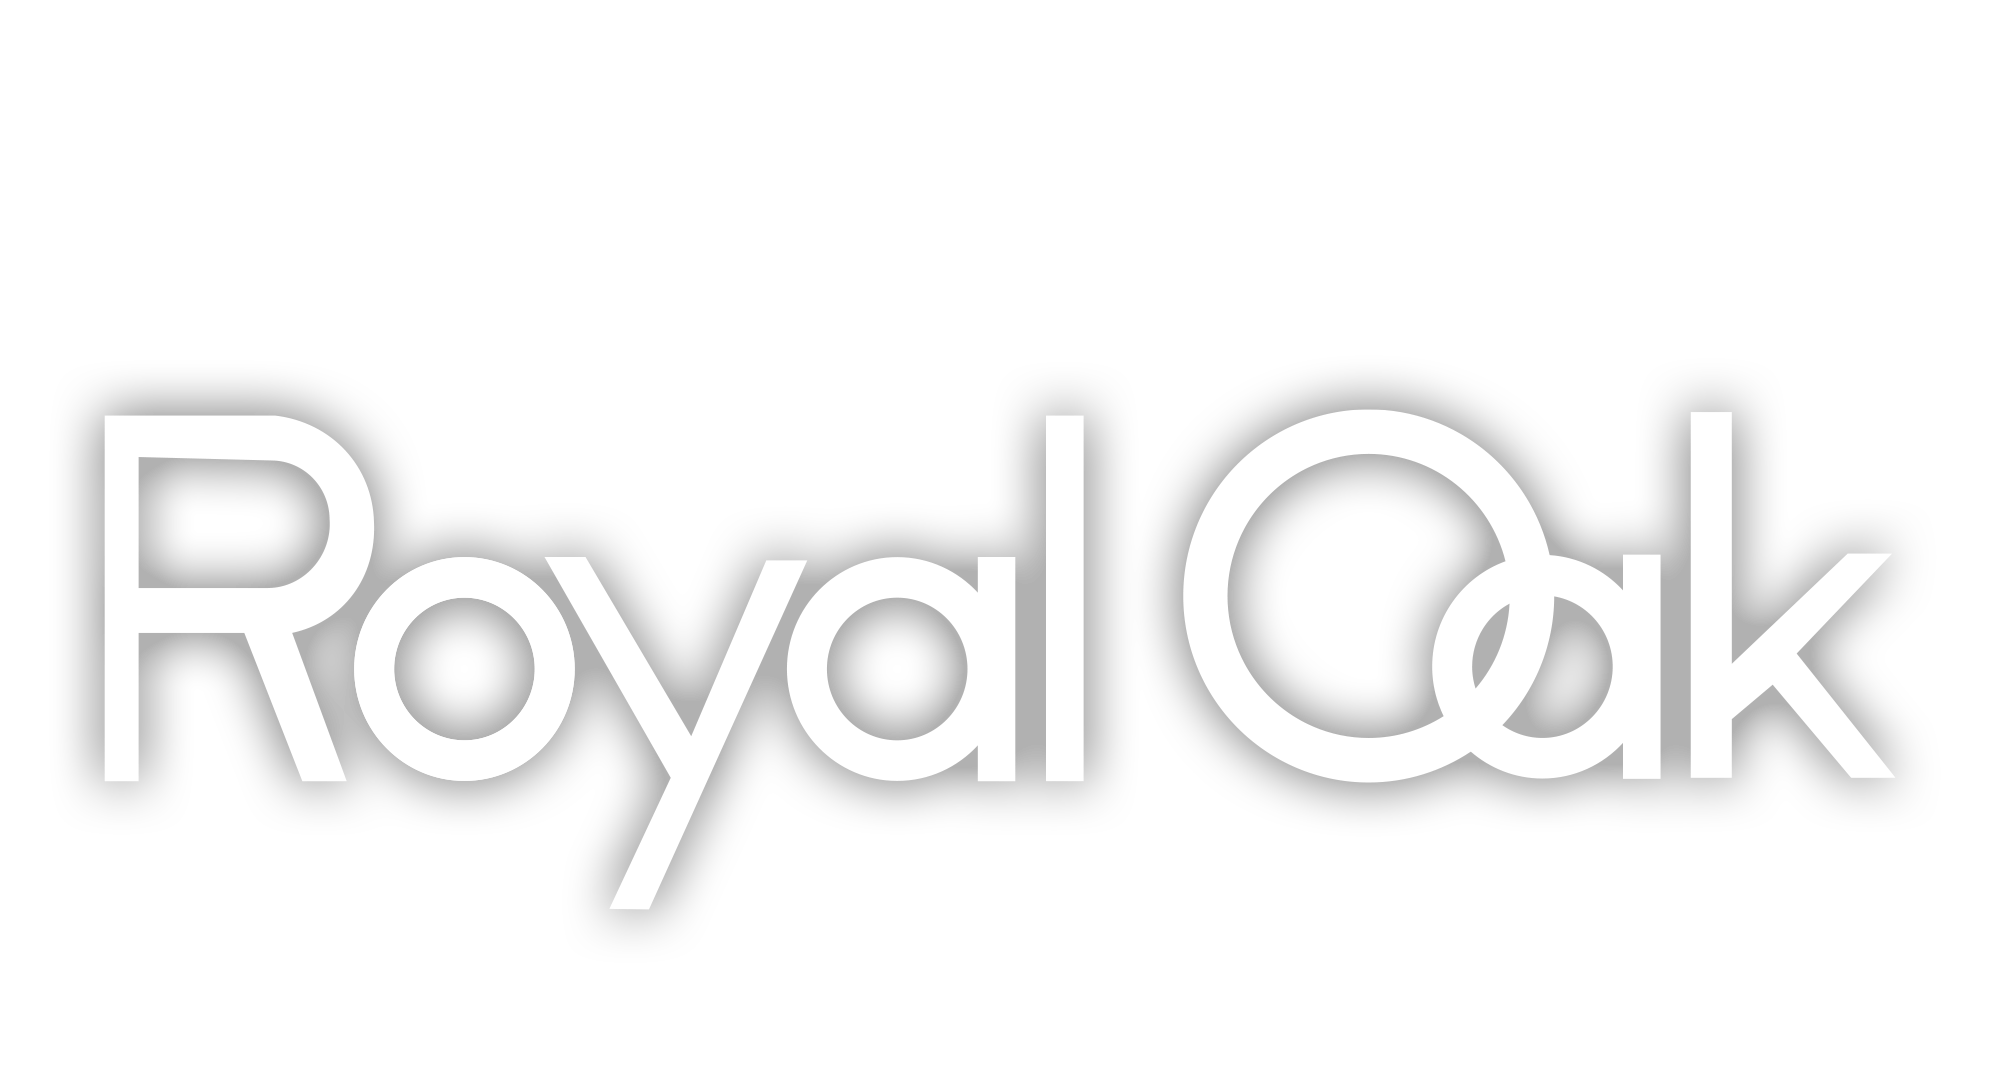 audemars piguet royal oak logo